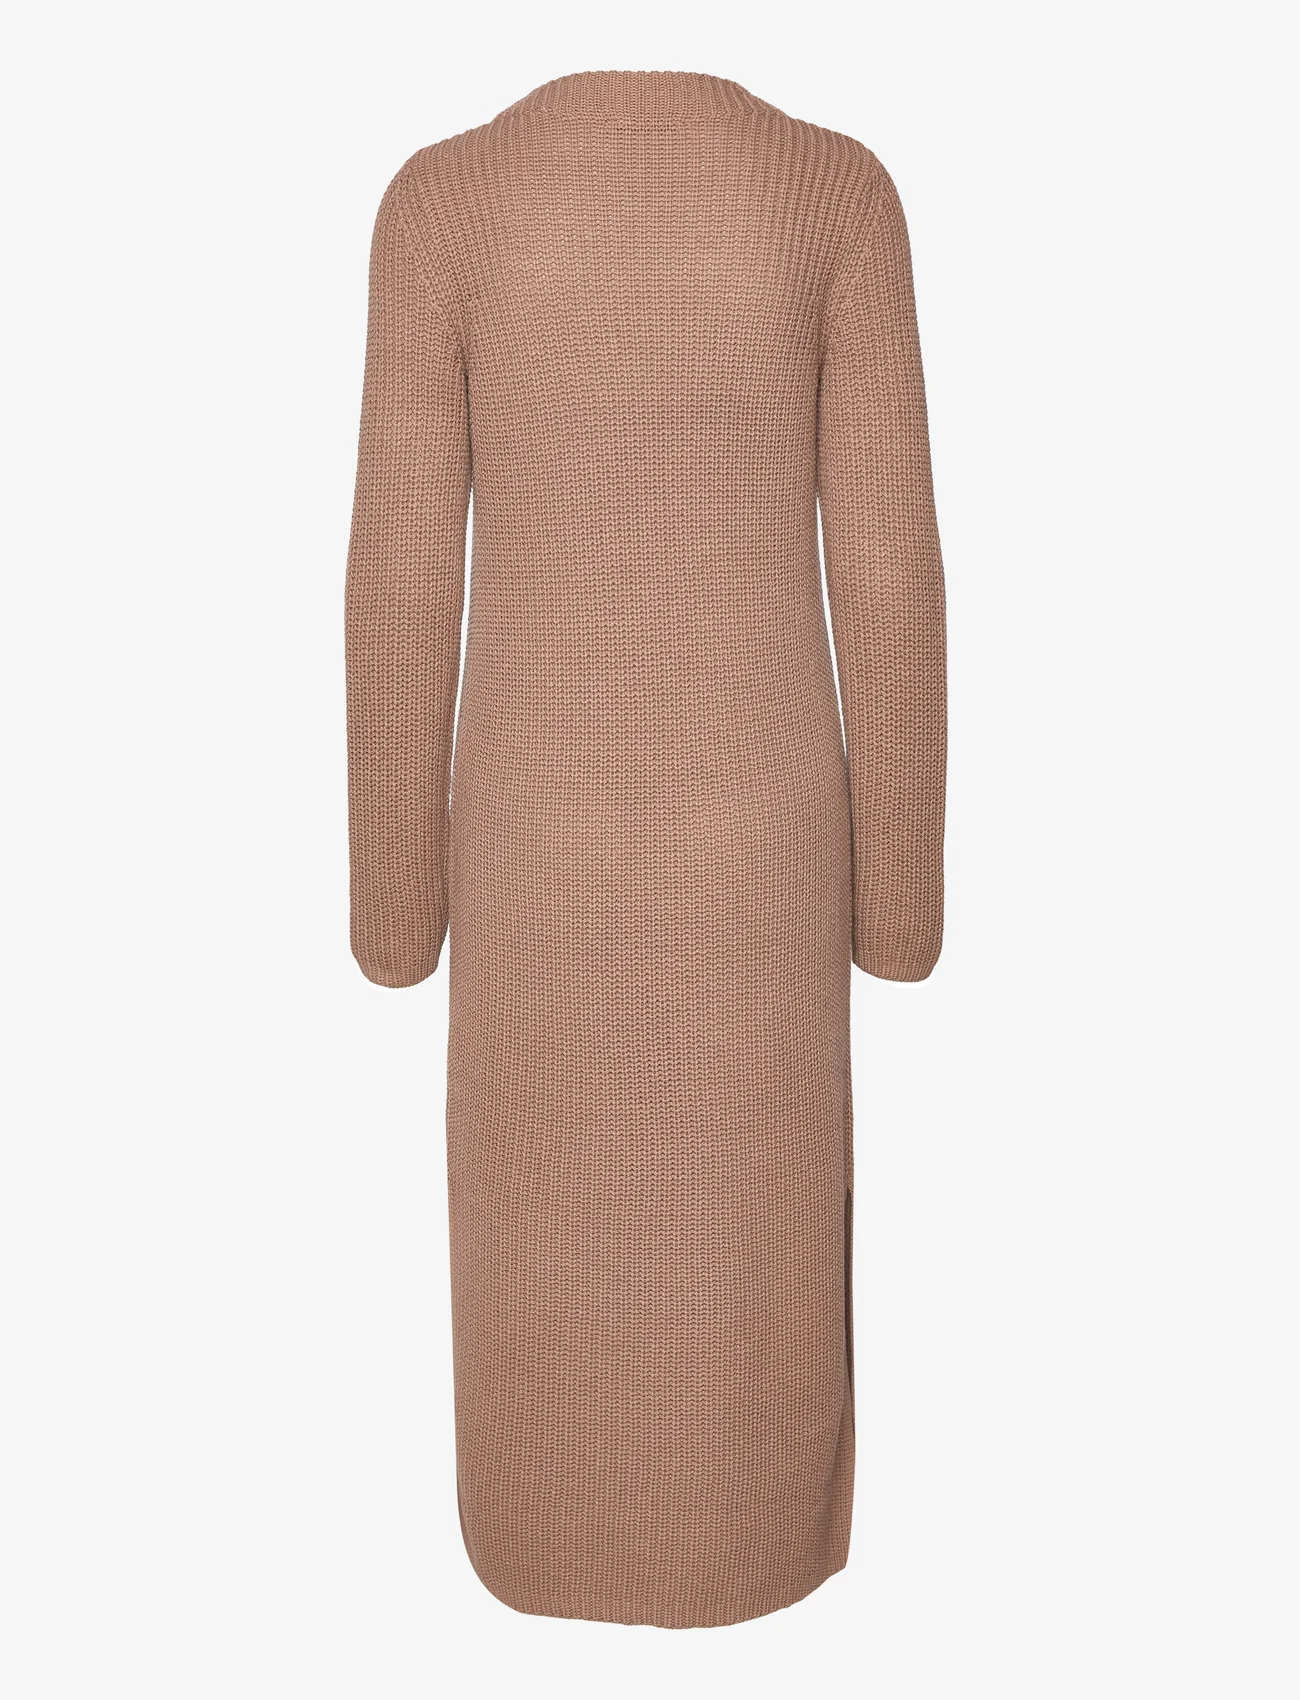 Esprit Casual - Knitted dress - strikkede kjoler - taupe 5 - 1